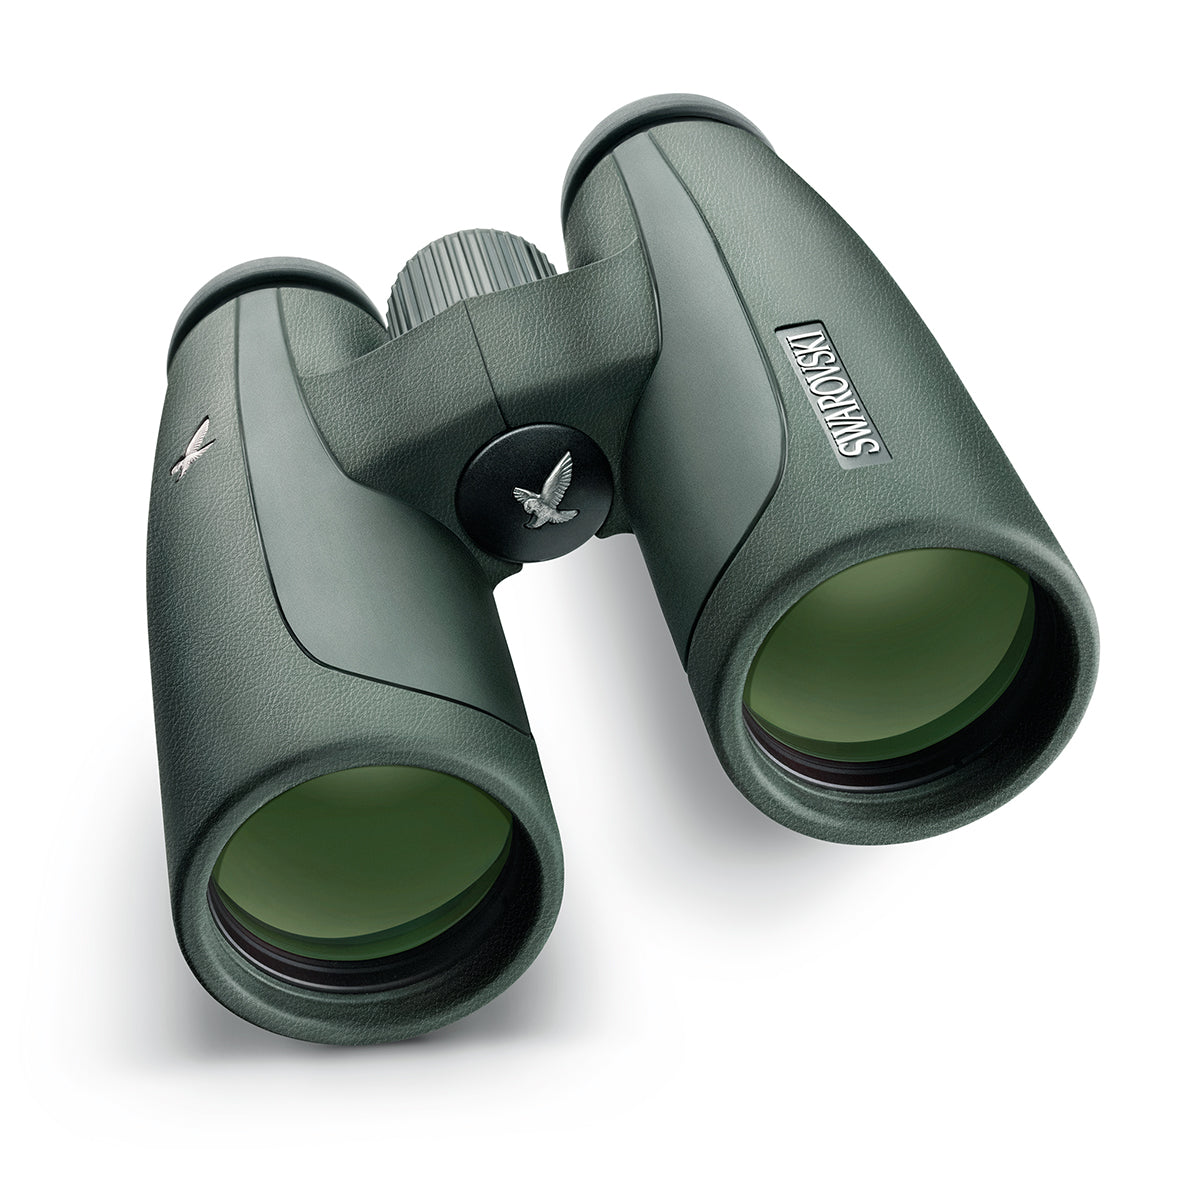 Swarovski SLC 10x42 W B Binocular in Swarovski SLC 10x42 W B Binocular by Swarovski Optik | Optics - goHUNT Shop by GOHUNT | Swarovski Optik - GOHUNT Shop